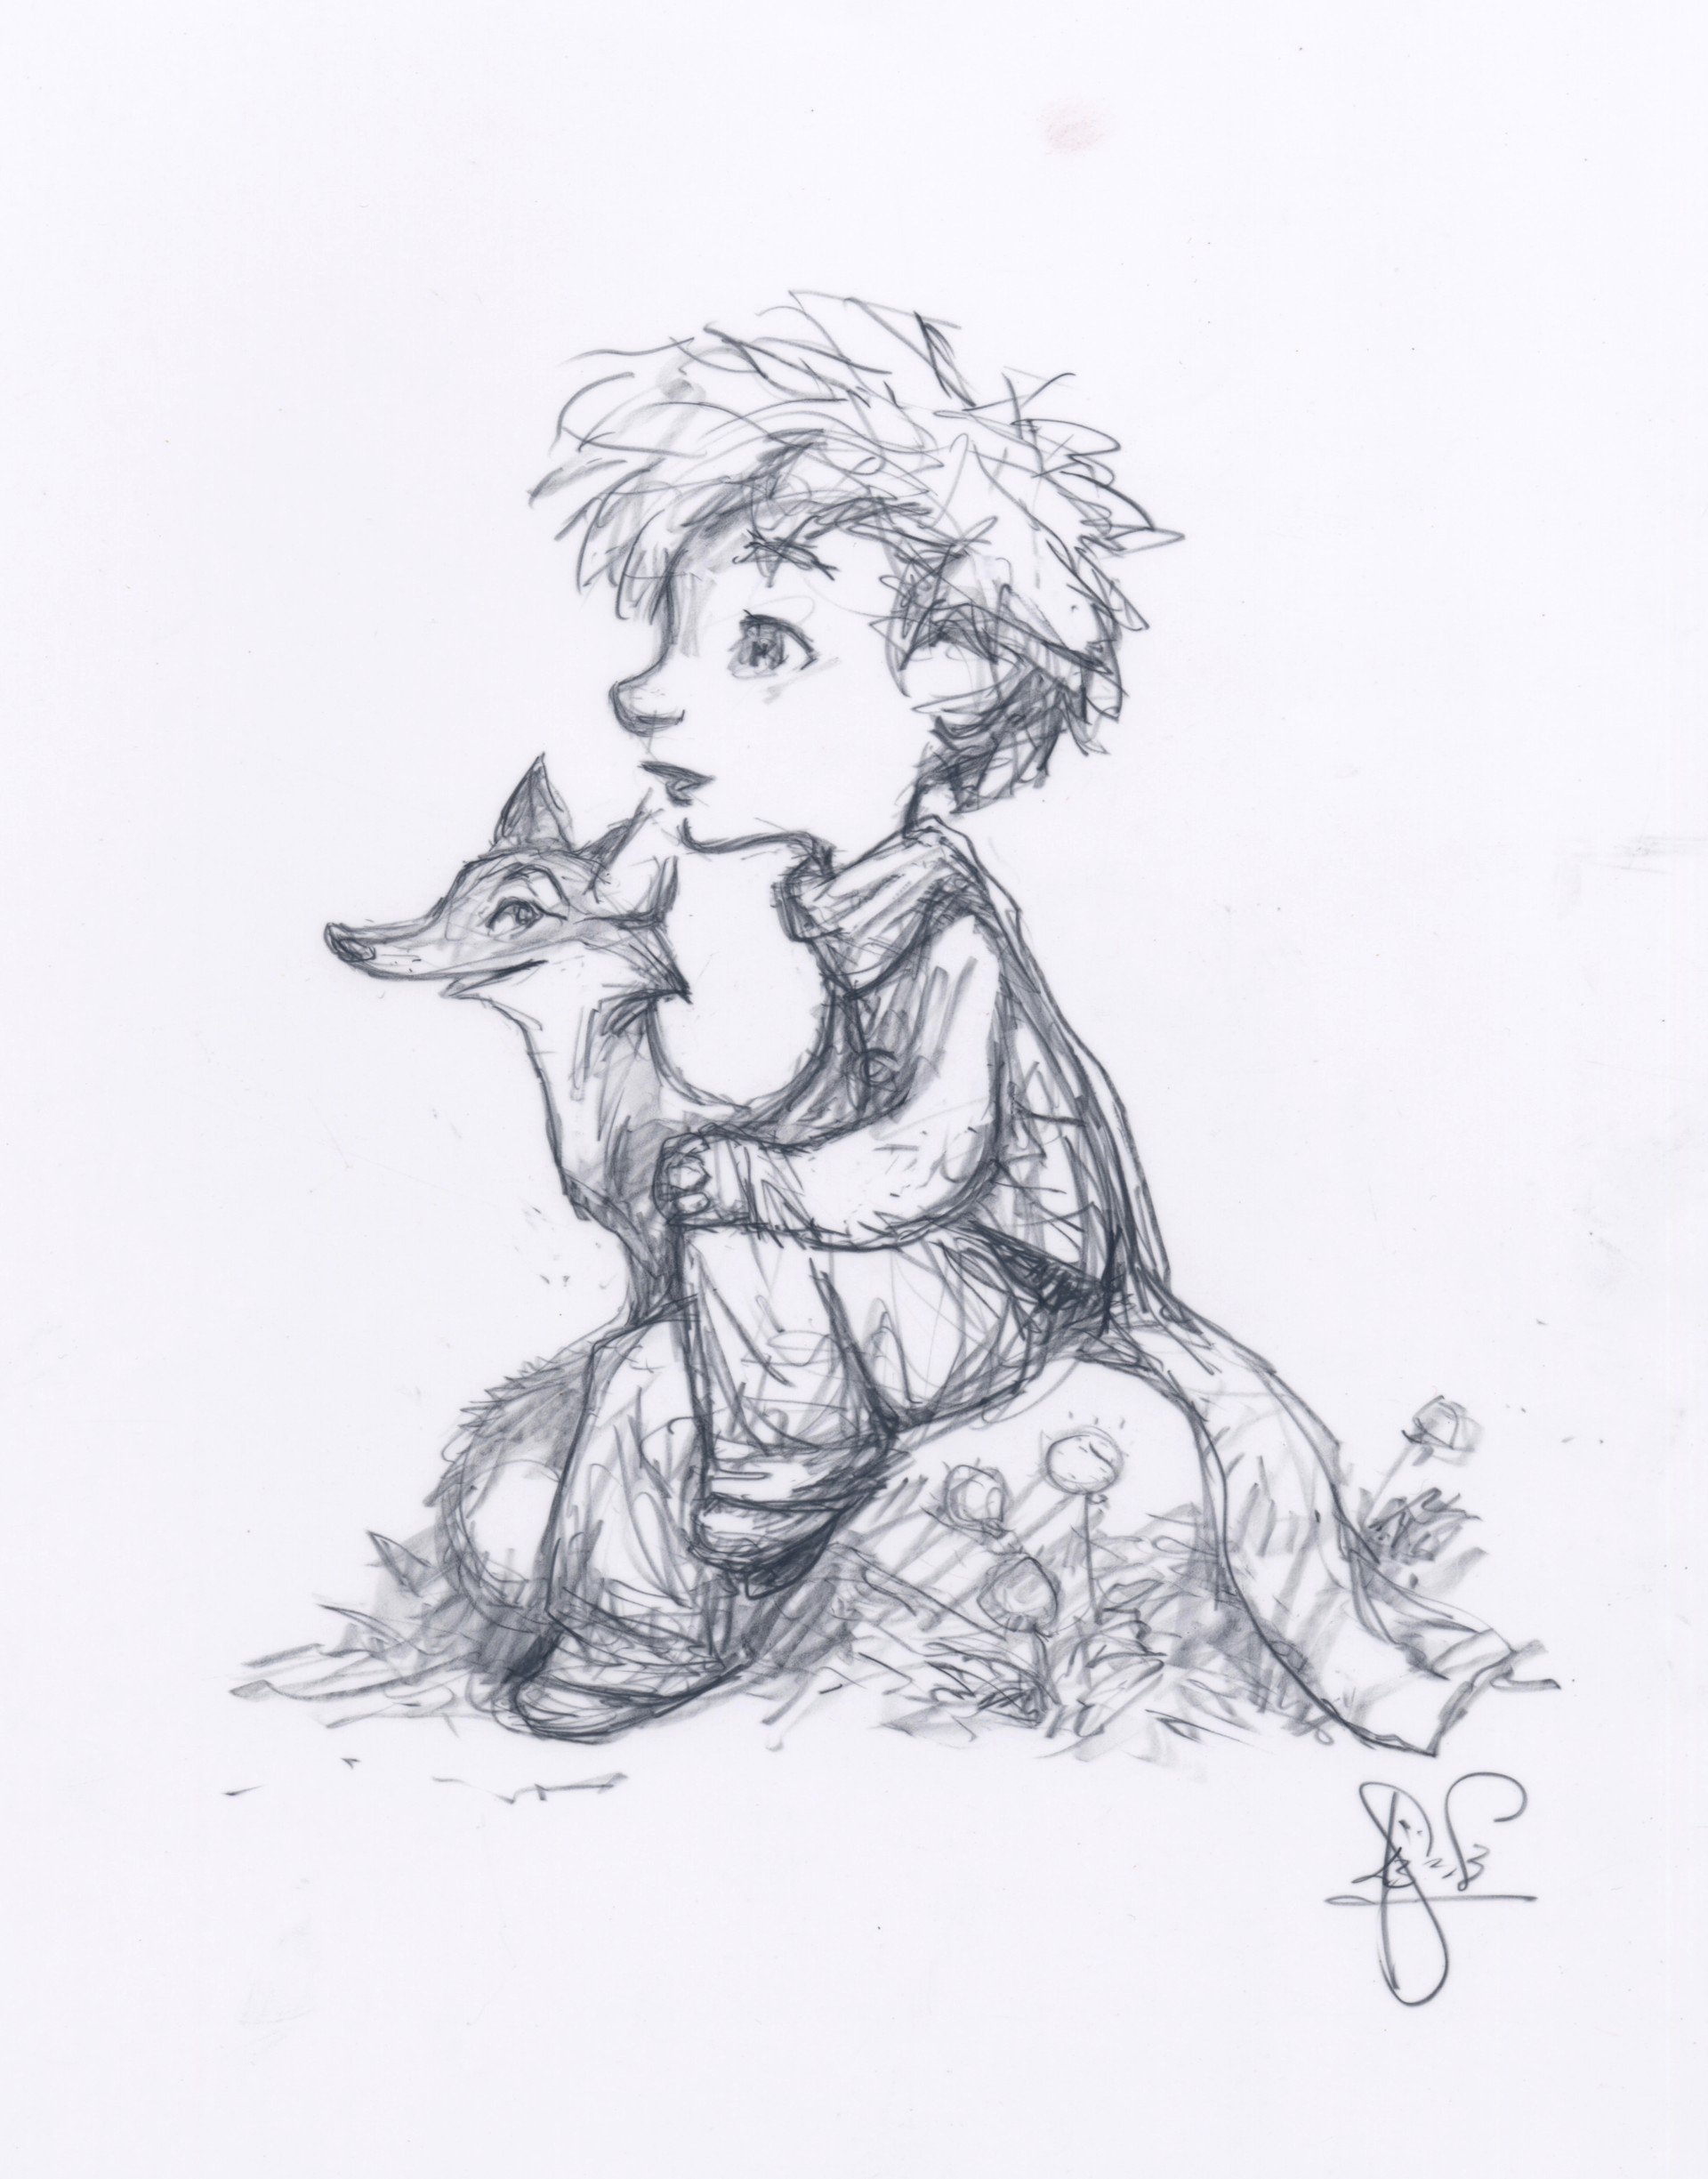 The Little Prince, Fox 1 by Peter de Sève